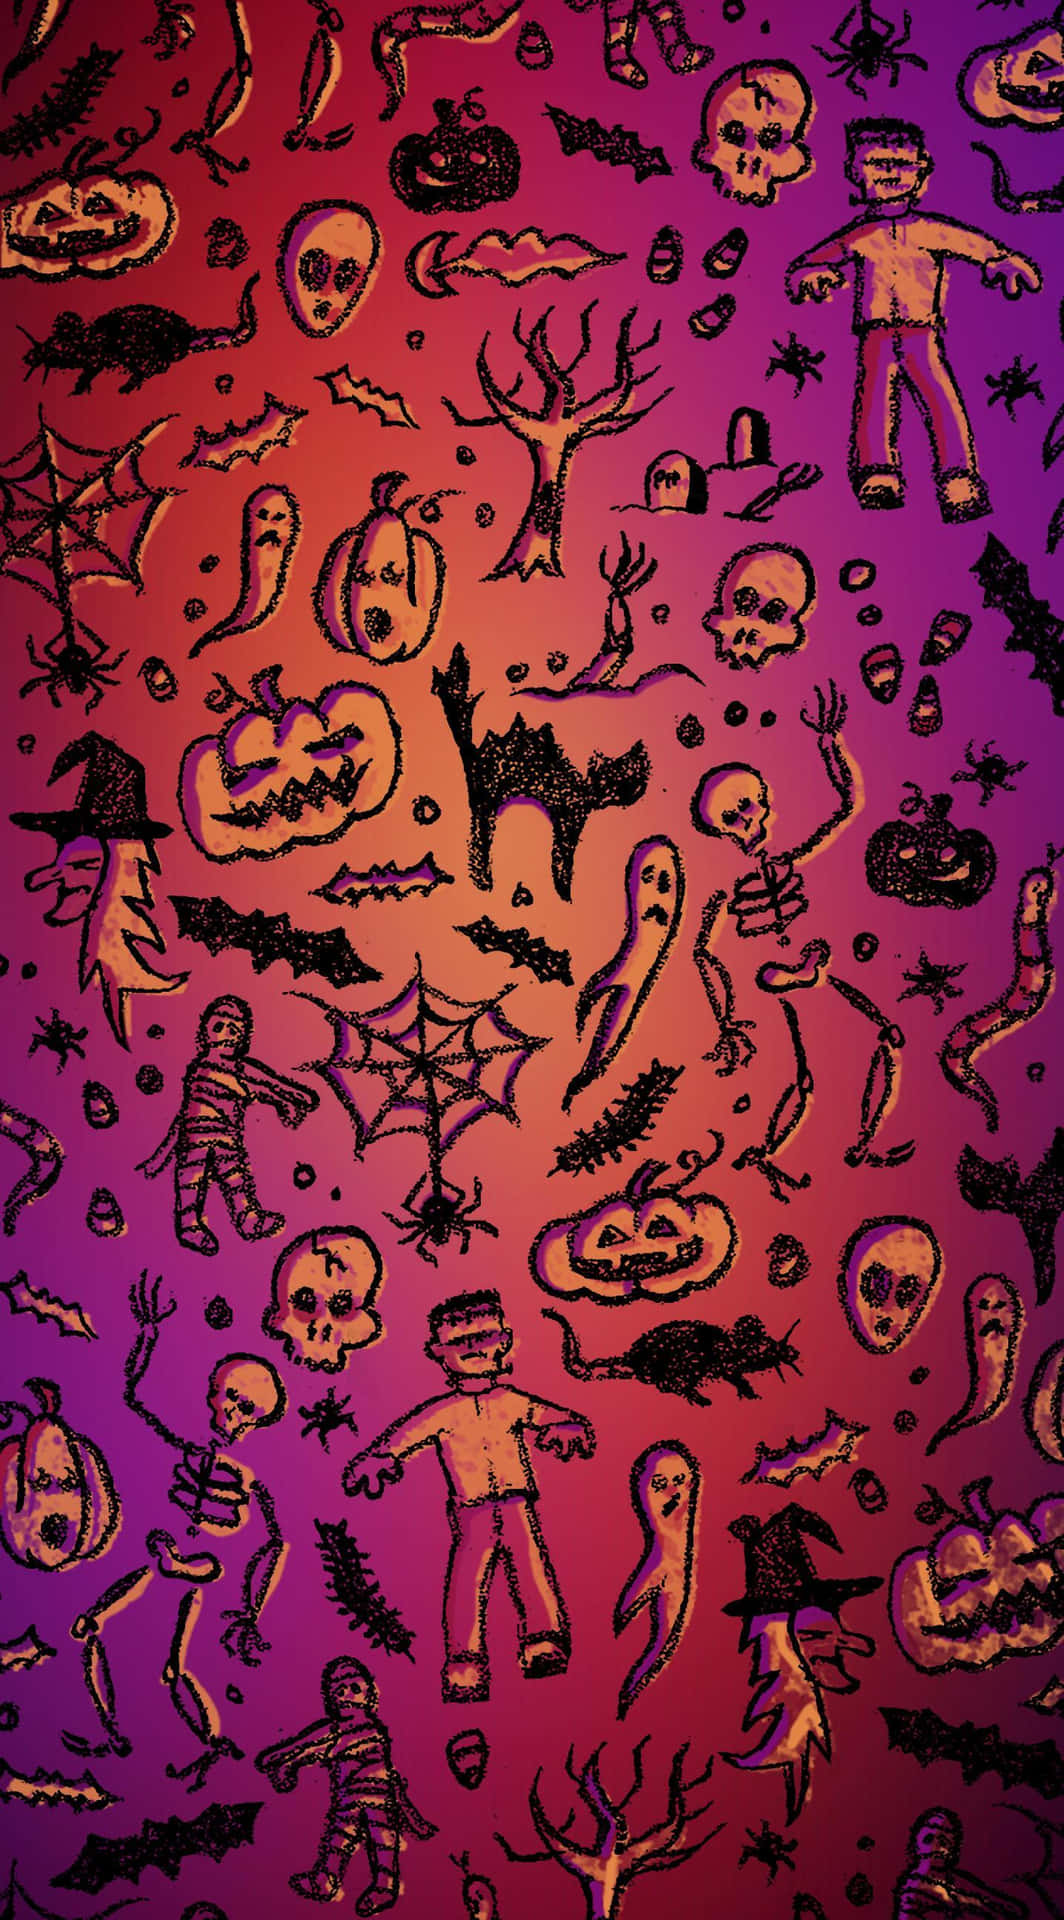 Trick-or-Treaters Enjoy a Spooky Night of Purple Halloween Fun Wallpaper